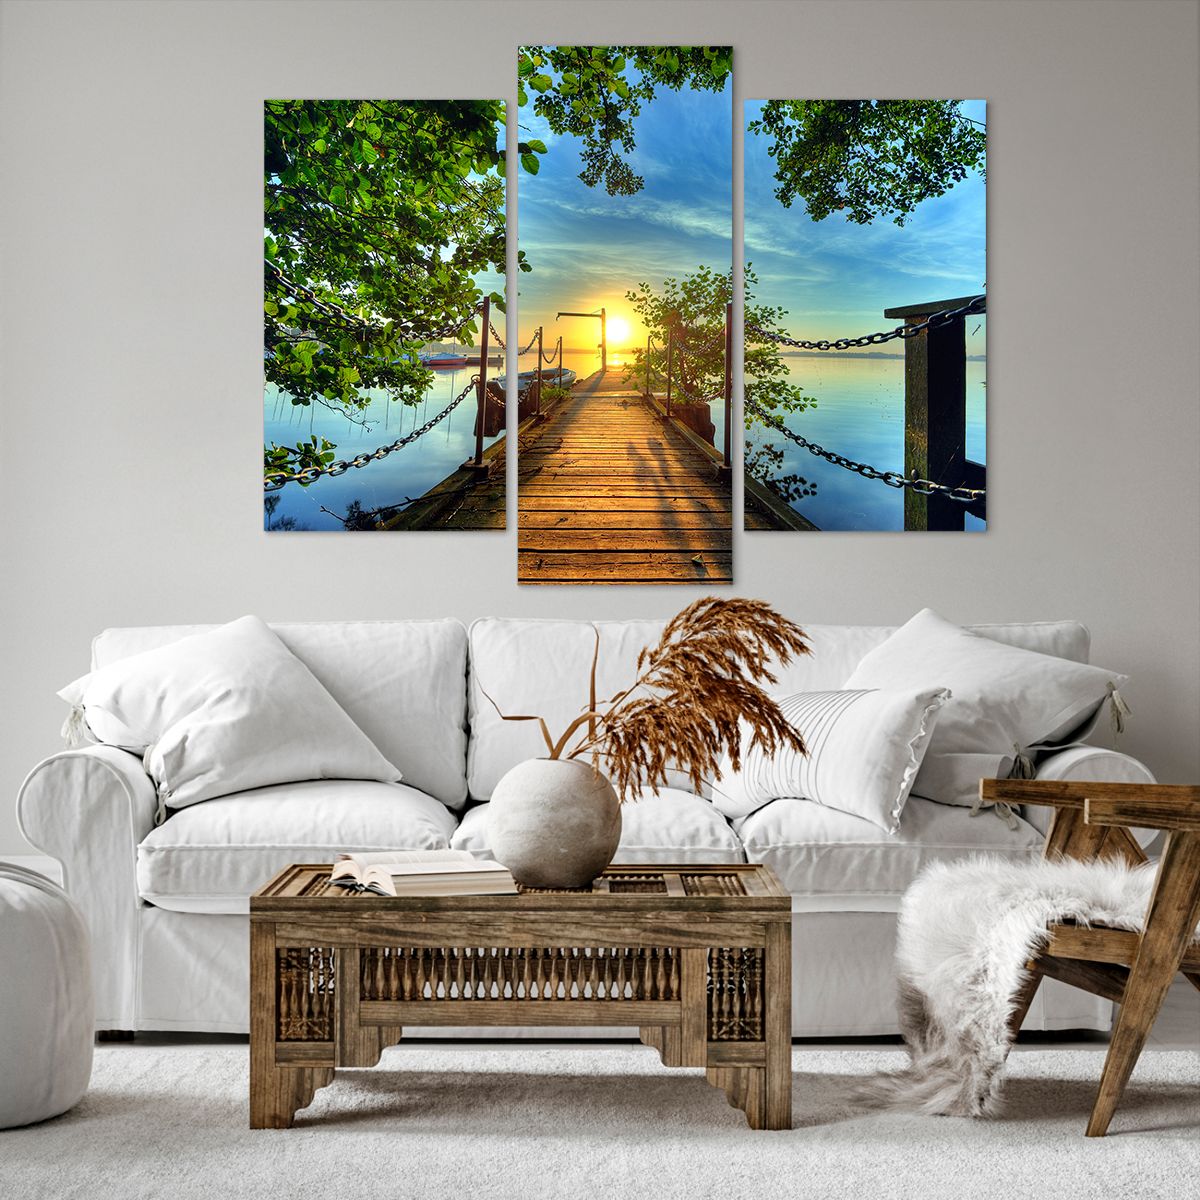 Bild auf Leinwand Landschaft, Bild auf Leinwand See, Bild auf Leinwand Segelboot, Bild auf Leinwand Holzbrücke, Bild auf Leinwand Baum